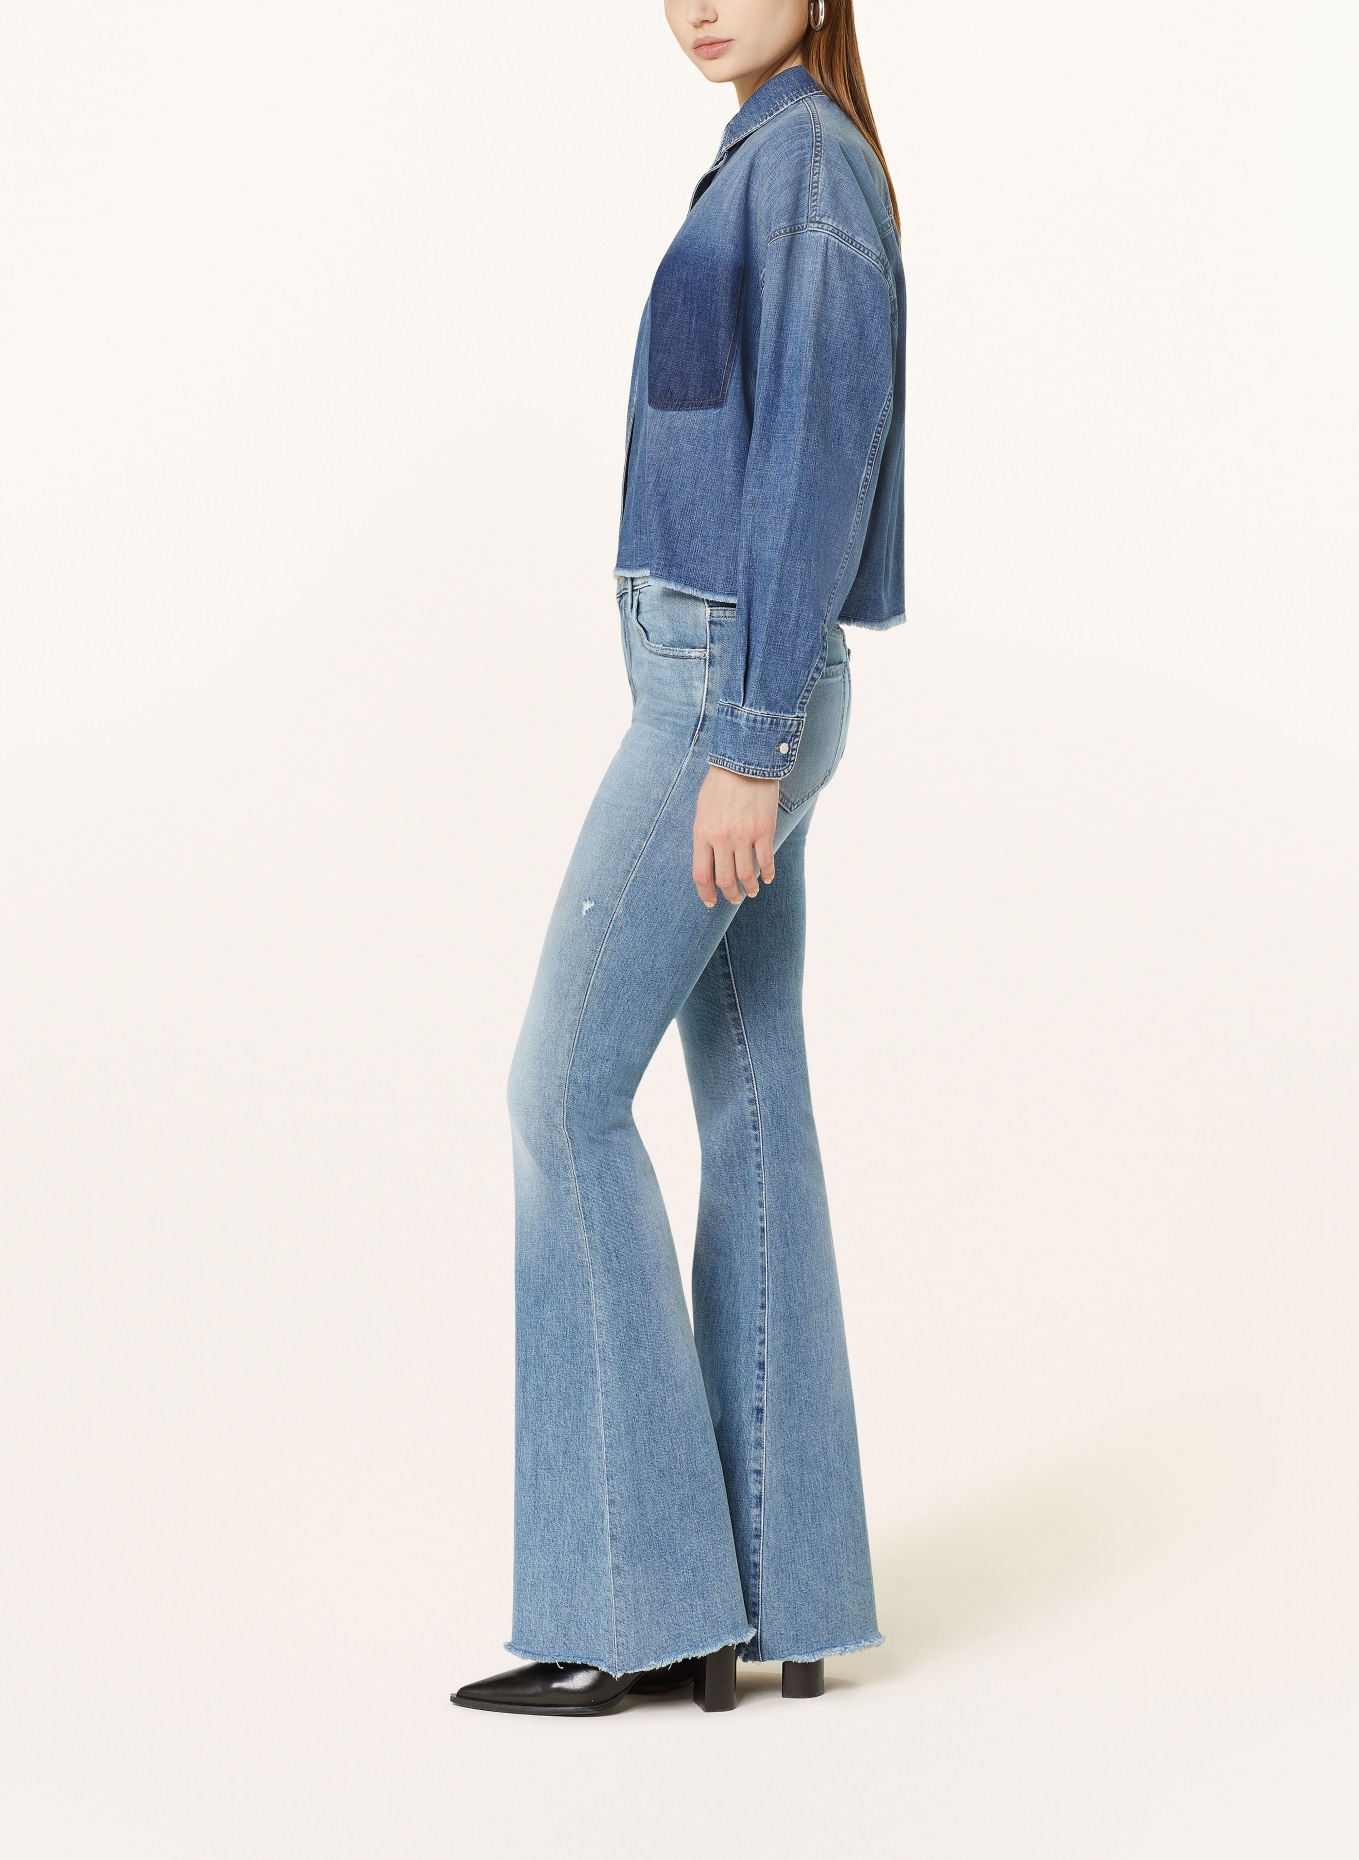 THE.NIM STANDARD Flared jeans KYLIE, Color: W837-VLG LIGHT BLUE (Image 4)